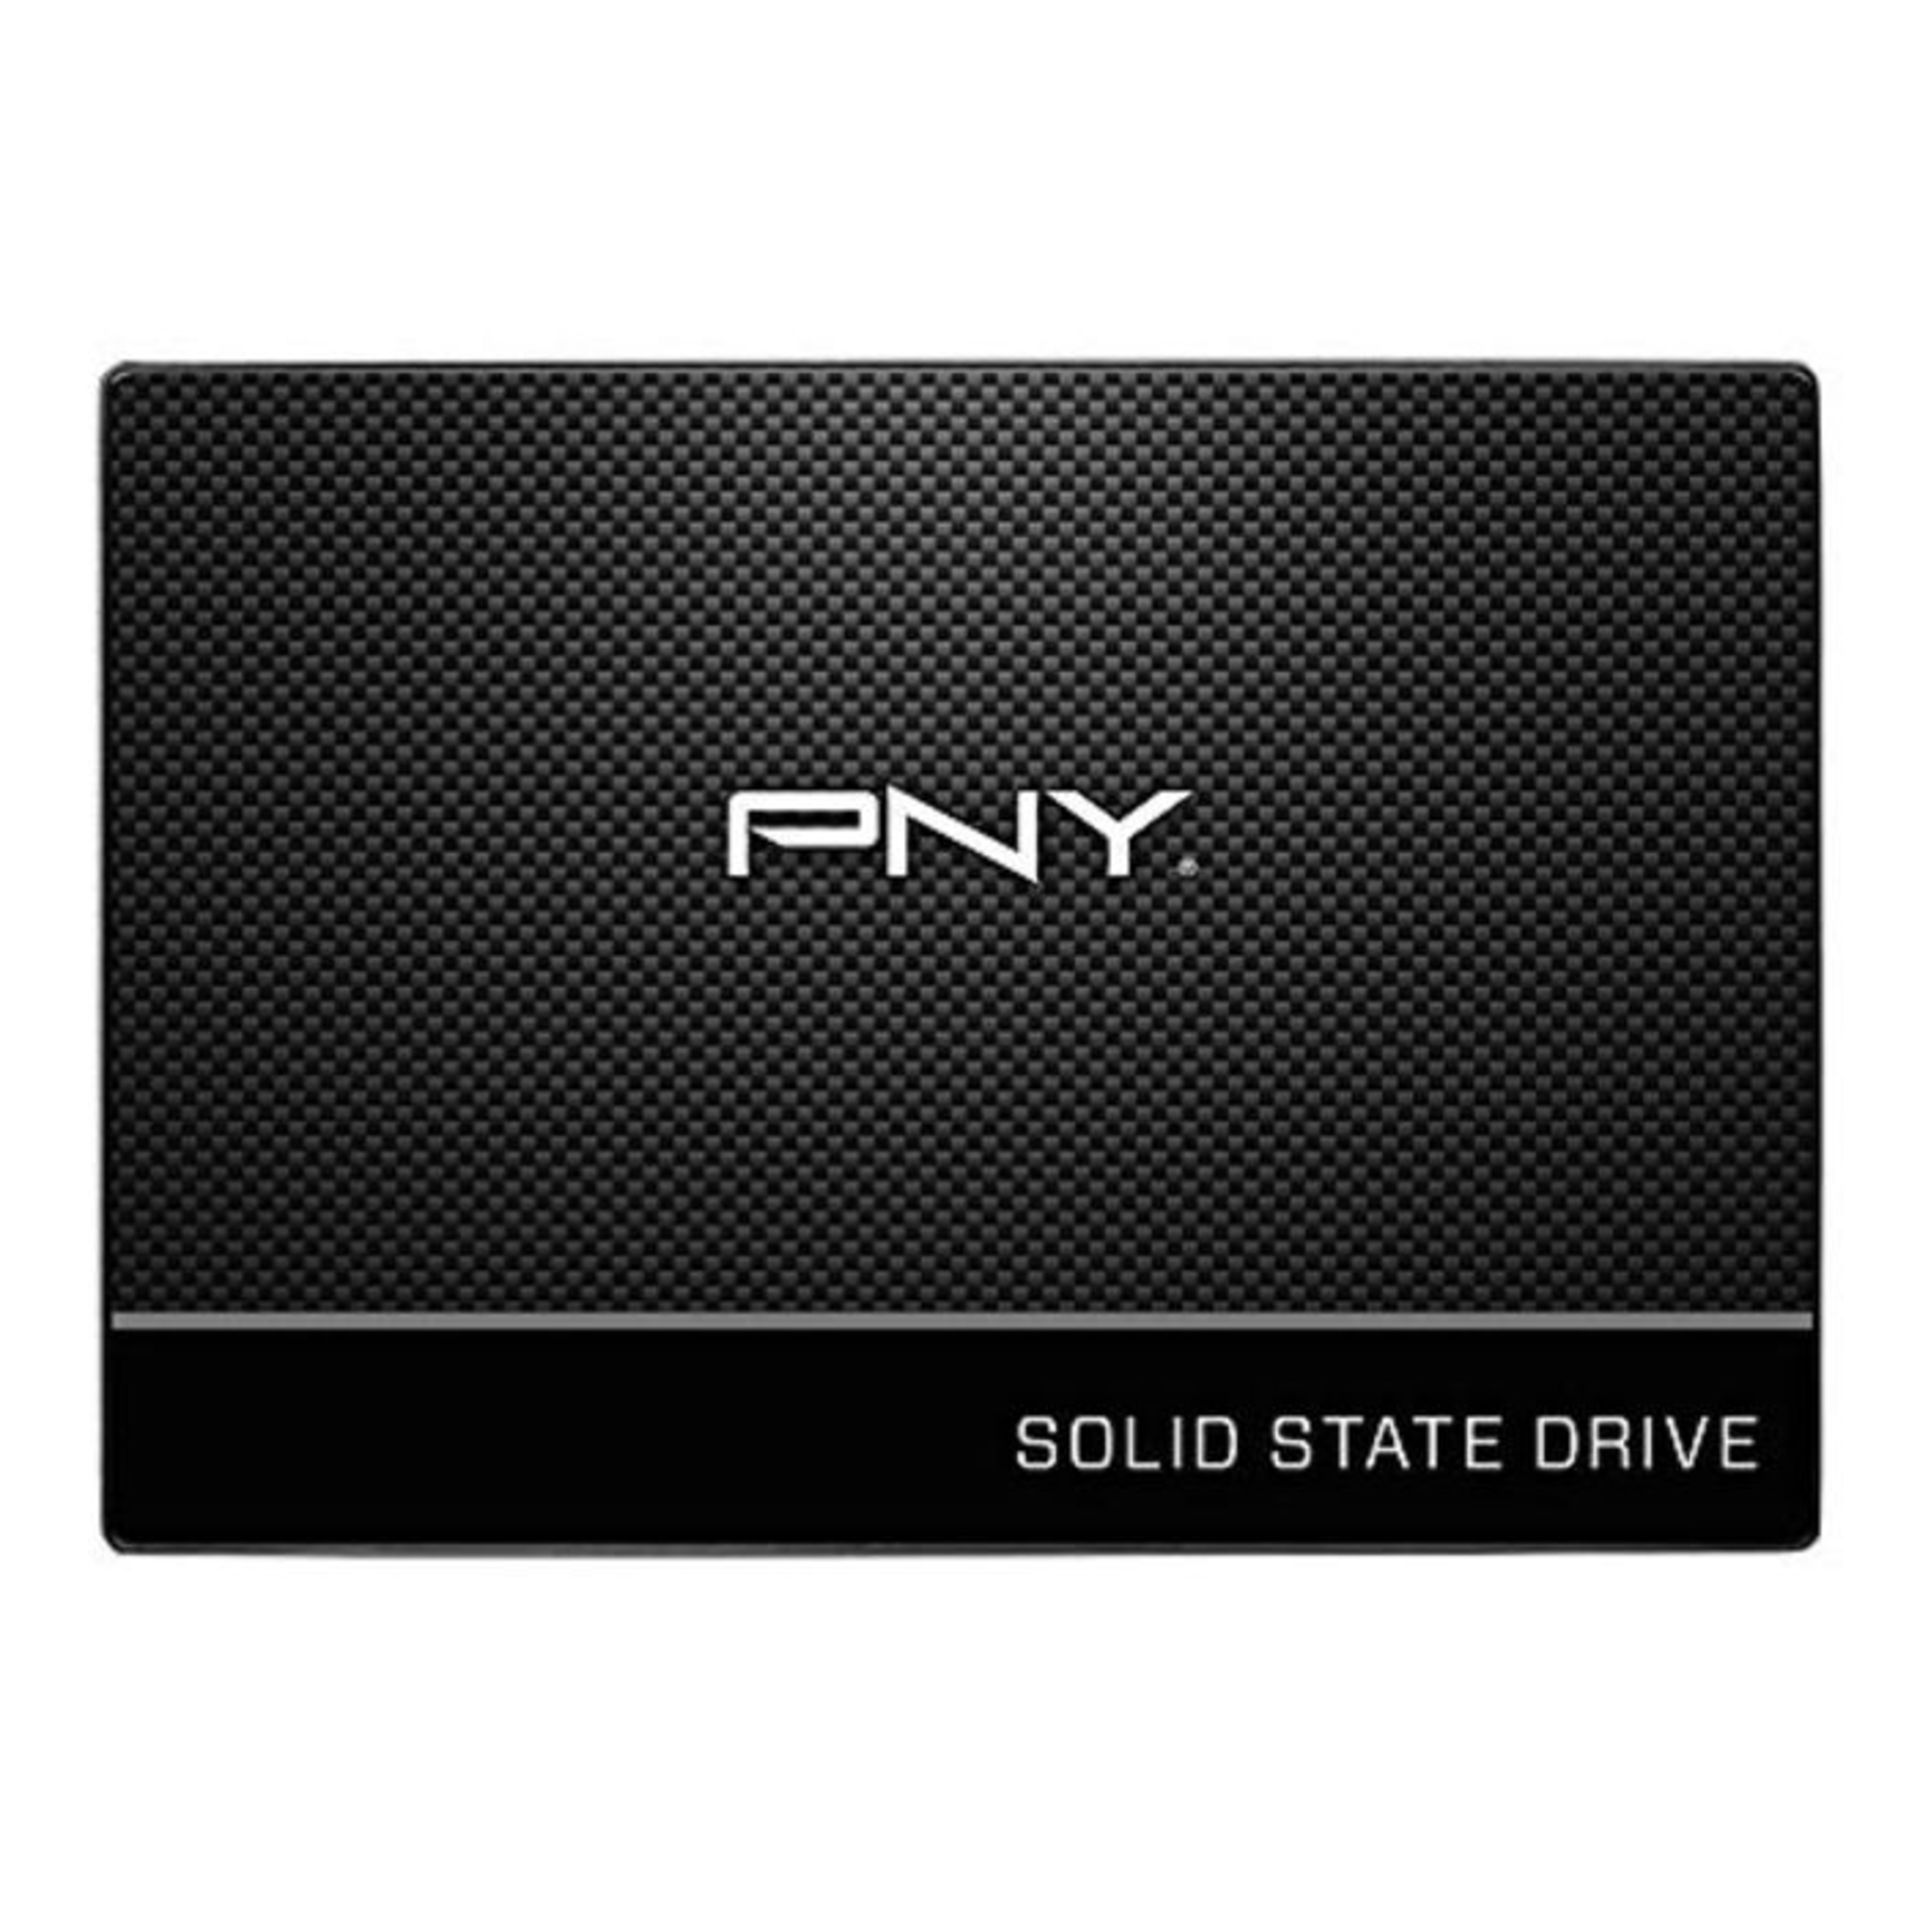 PNY CS900 Series 2.5" SATA III 6Gb/s - 120GB SSD - internal solid state drive